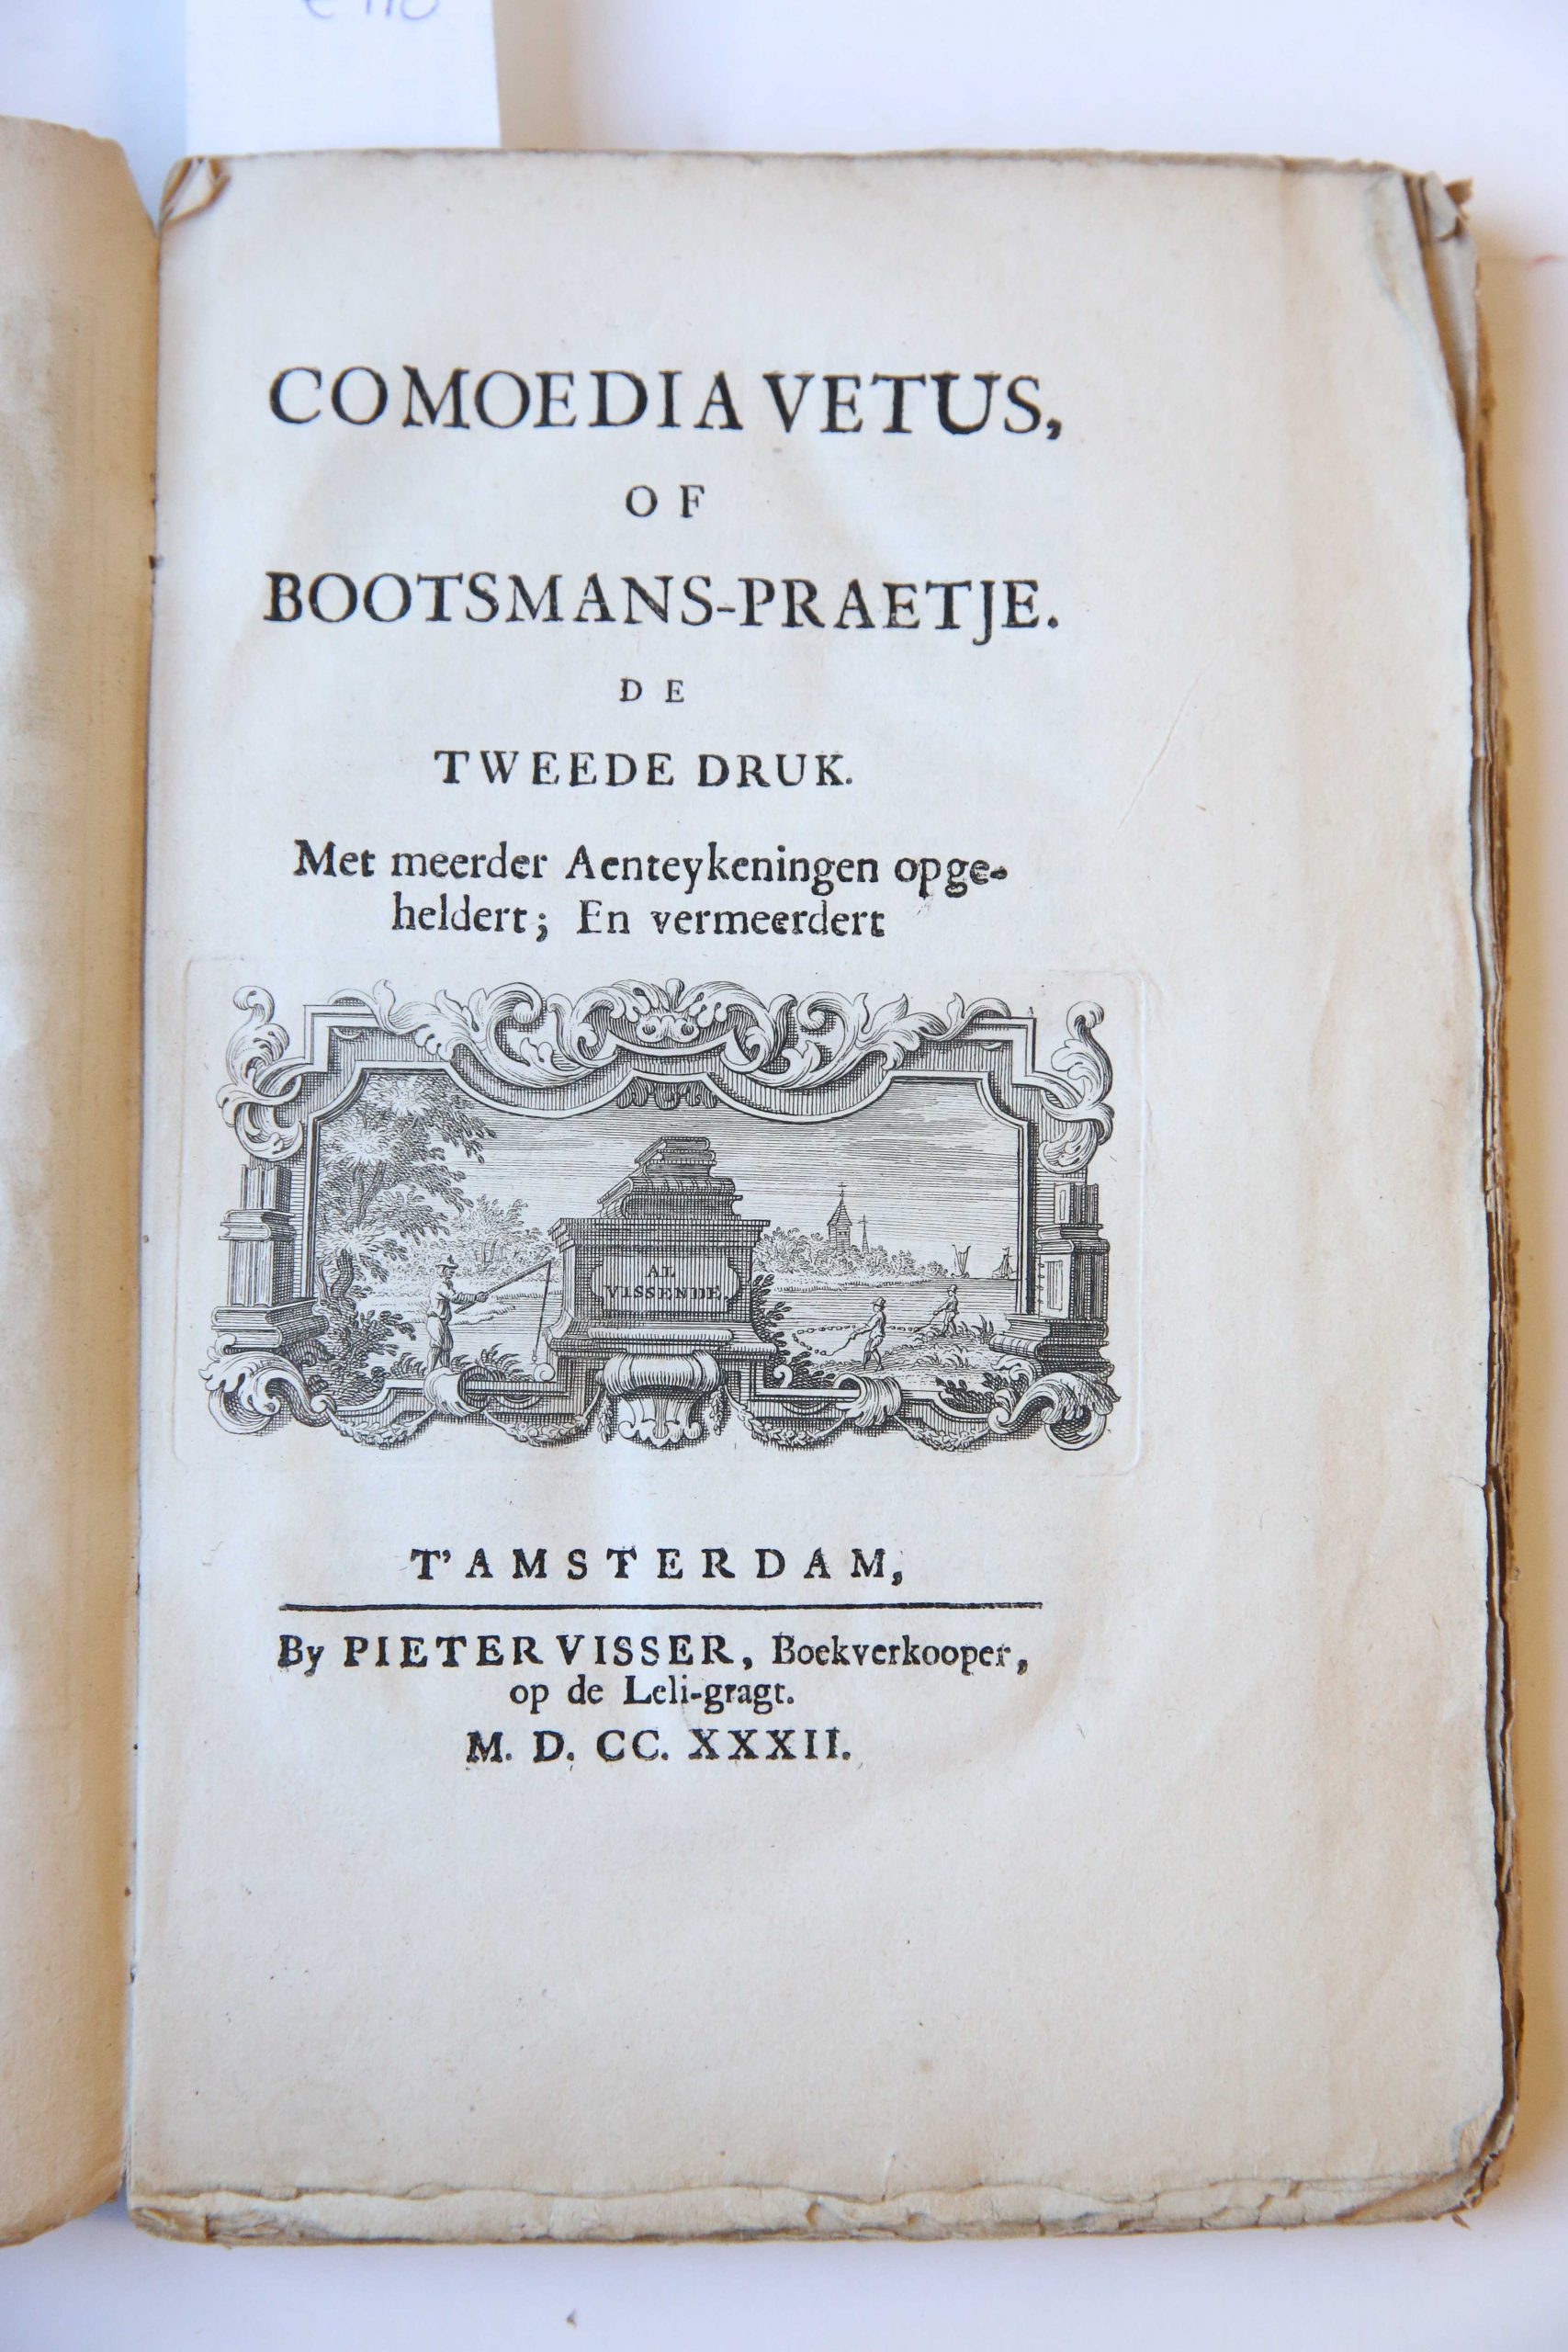 Comoedia vetus of bootsmans-praetje TOGETHER WITH Malle-waegen, zynde een vervolg (...). Amsterdam, P. Visser, 1732, 8+136+(16) pp. Corrected enlarged edition: Door eenige Aentekeninge opgeheldert en vermeerdert.